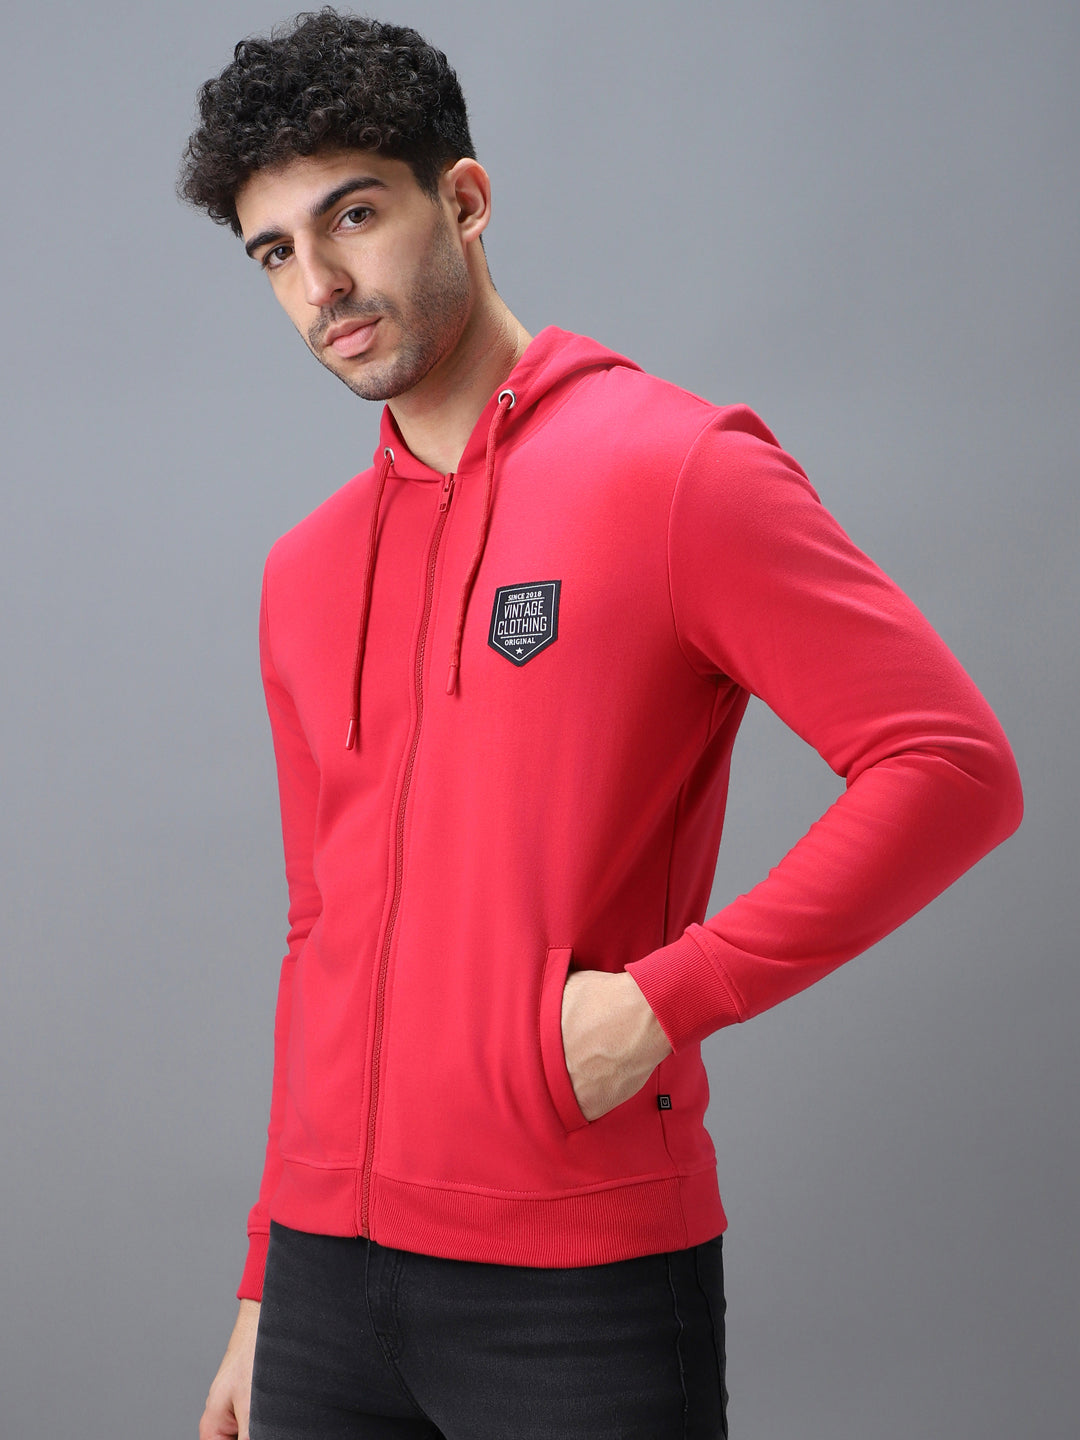 Men's Pink Cotton Solid Zippered Hooded Neck Sweatshirt